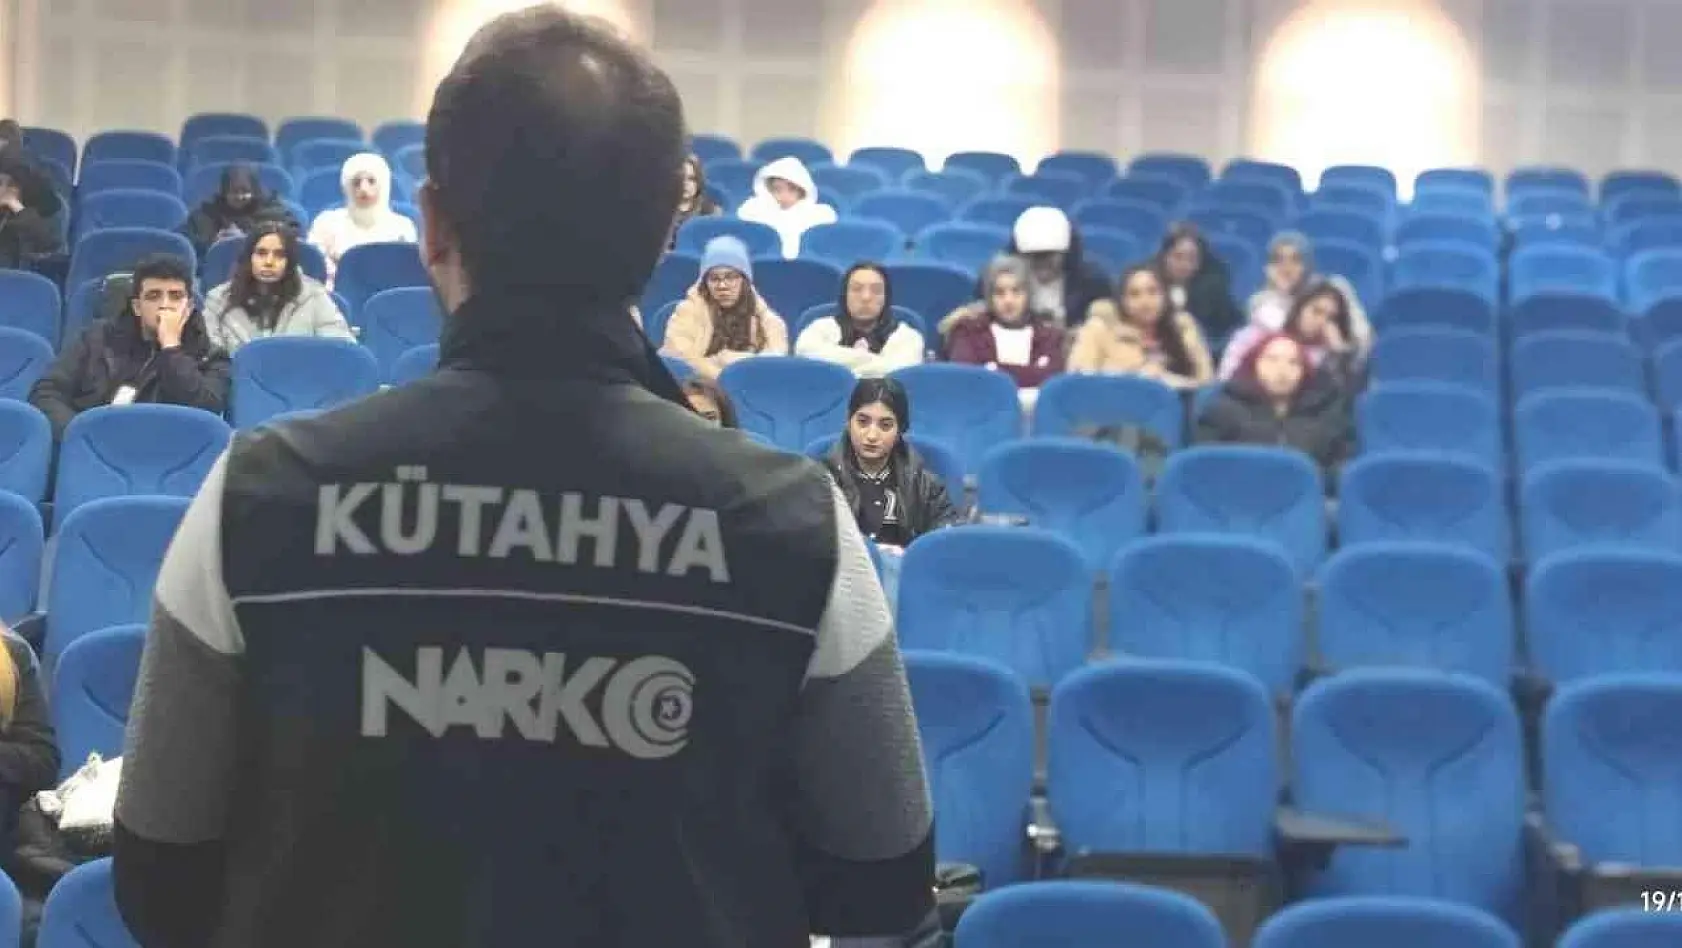 Kütahya'da üniversite öğrencilerine 'Narko gençlik' eğitimi